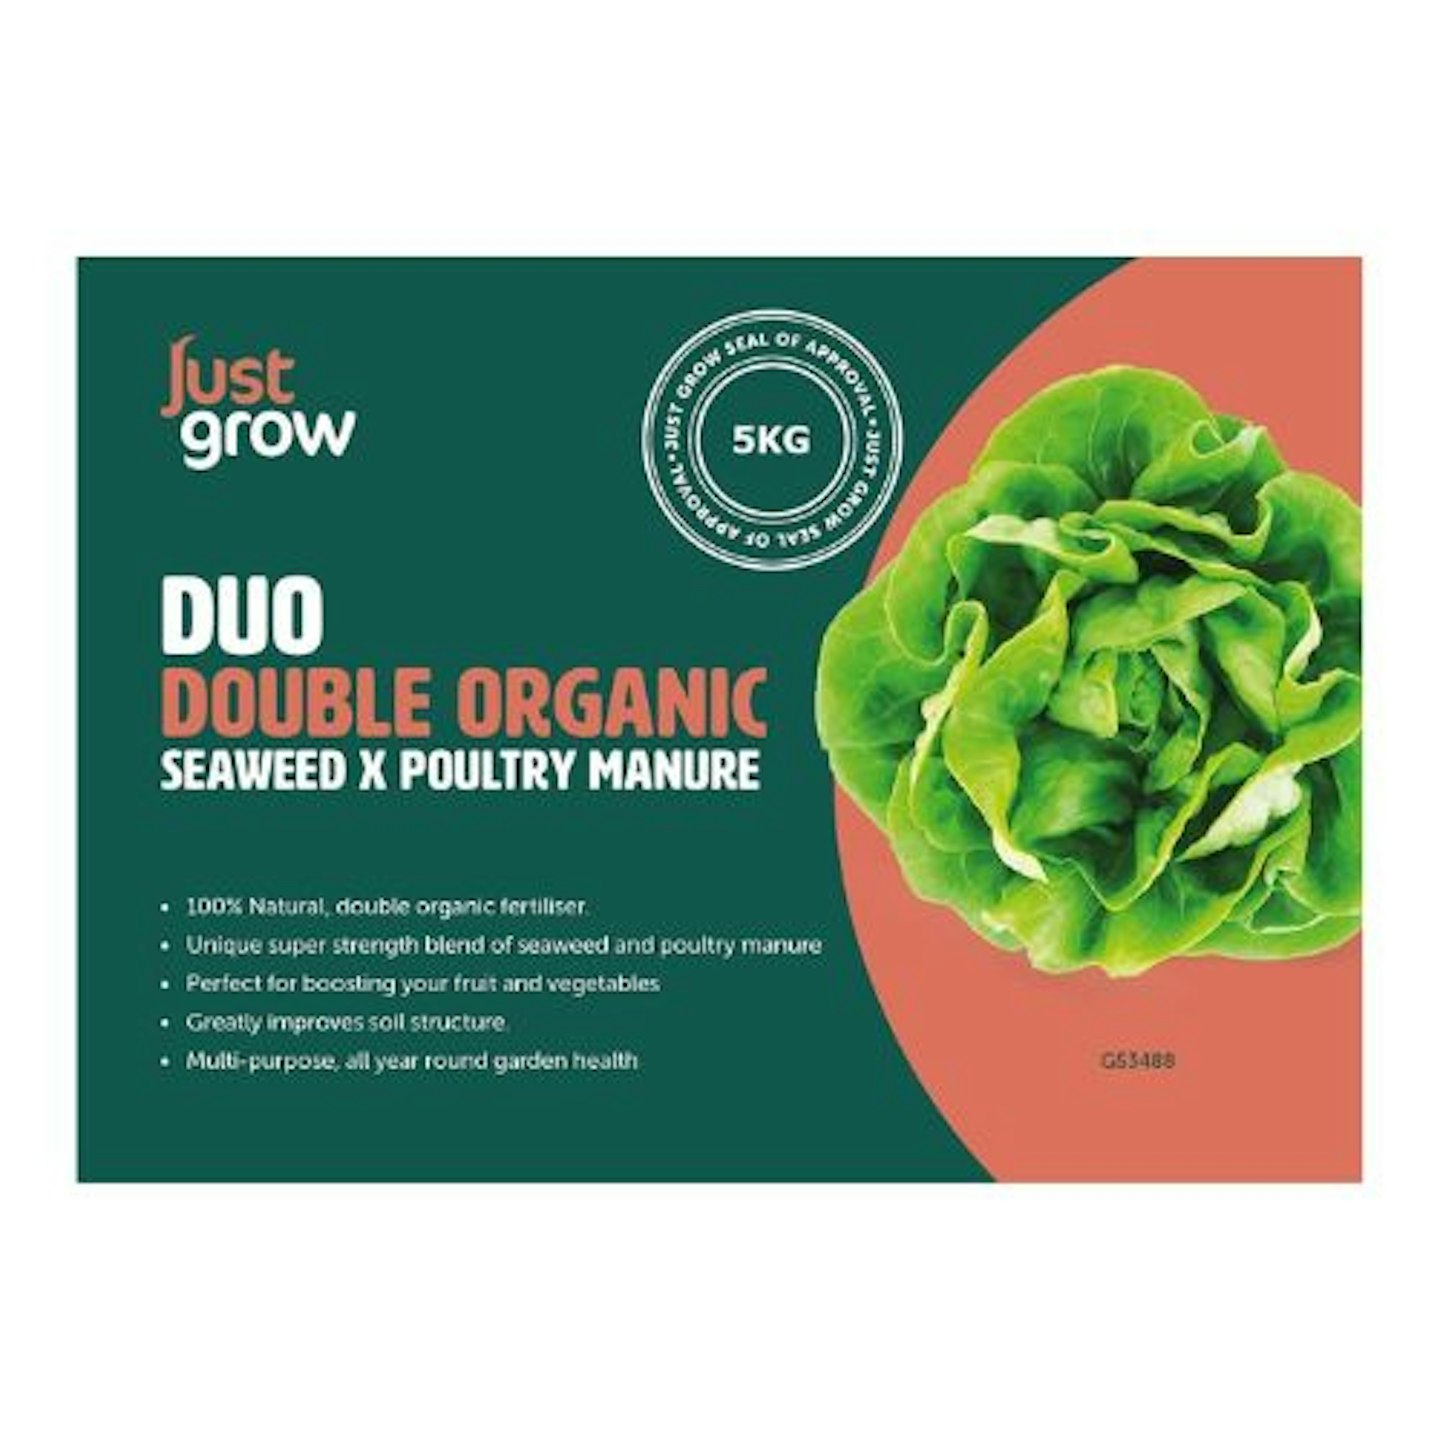 Just Grow 'DUO' 5KG Organic Fertiliser